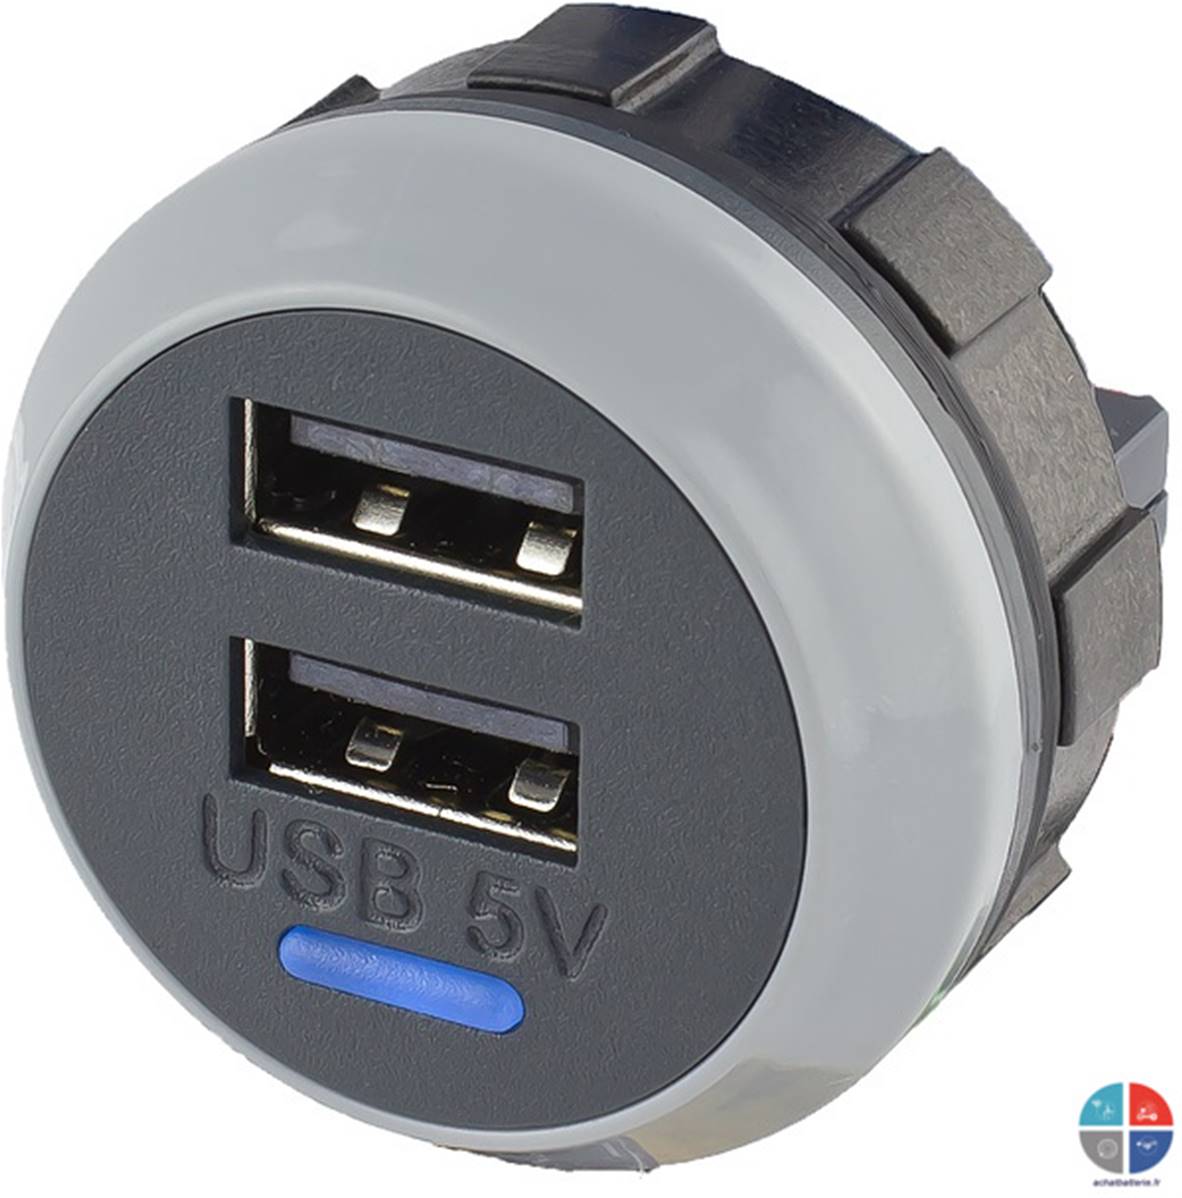 Pour camping-car camping-car double chargeur USB ports chargeur prise  charge surintensité protection contre la surchauffe